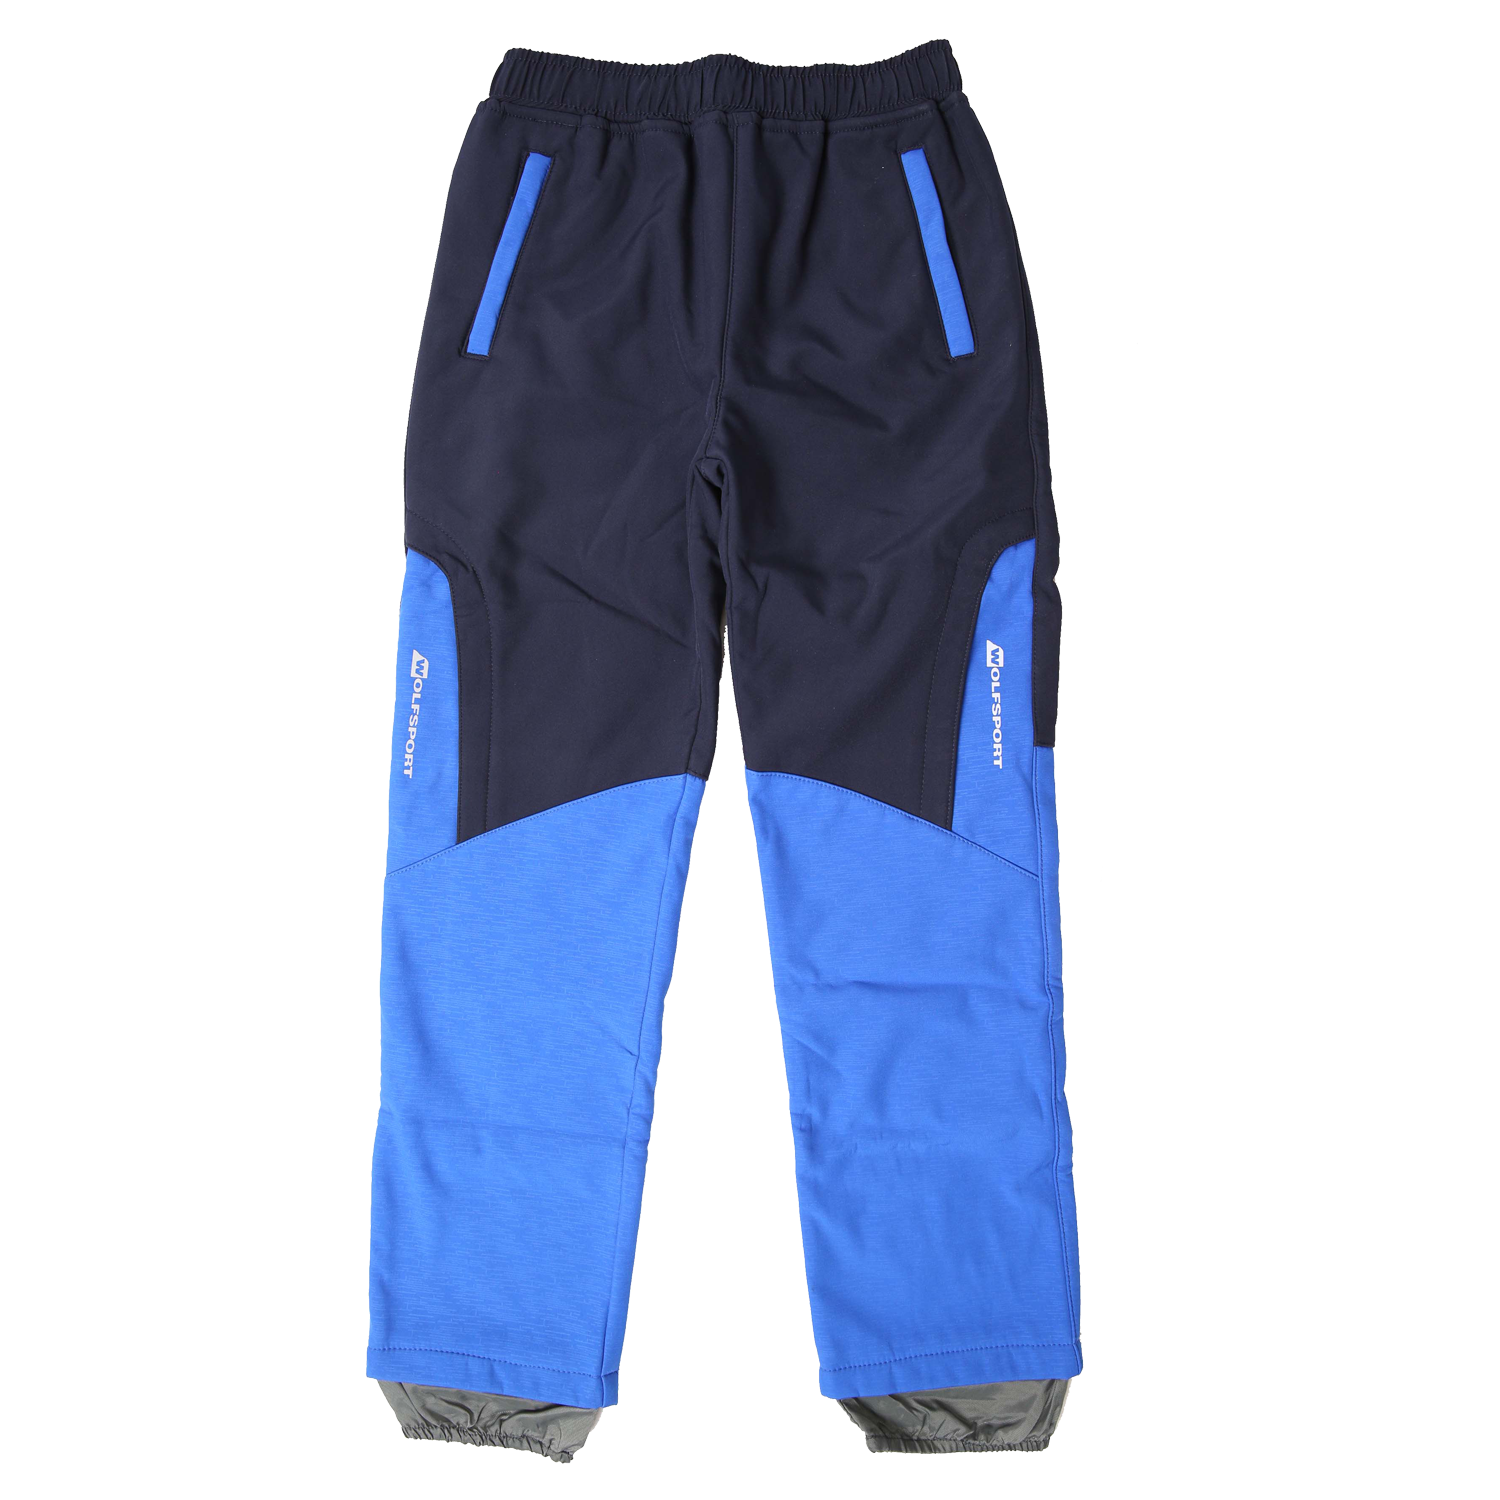 Chlapecké softshellové kalhoty, zateplené - Wolf B2195, tmavě modrá/modrá Barva: Modrá tmavě, Velikost: 128